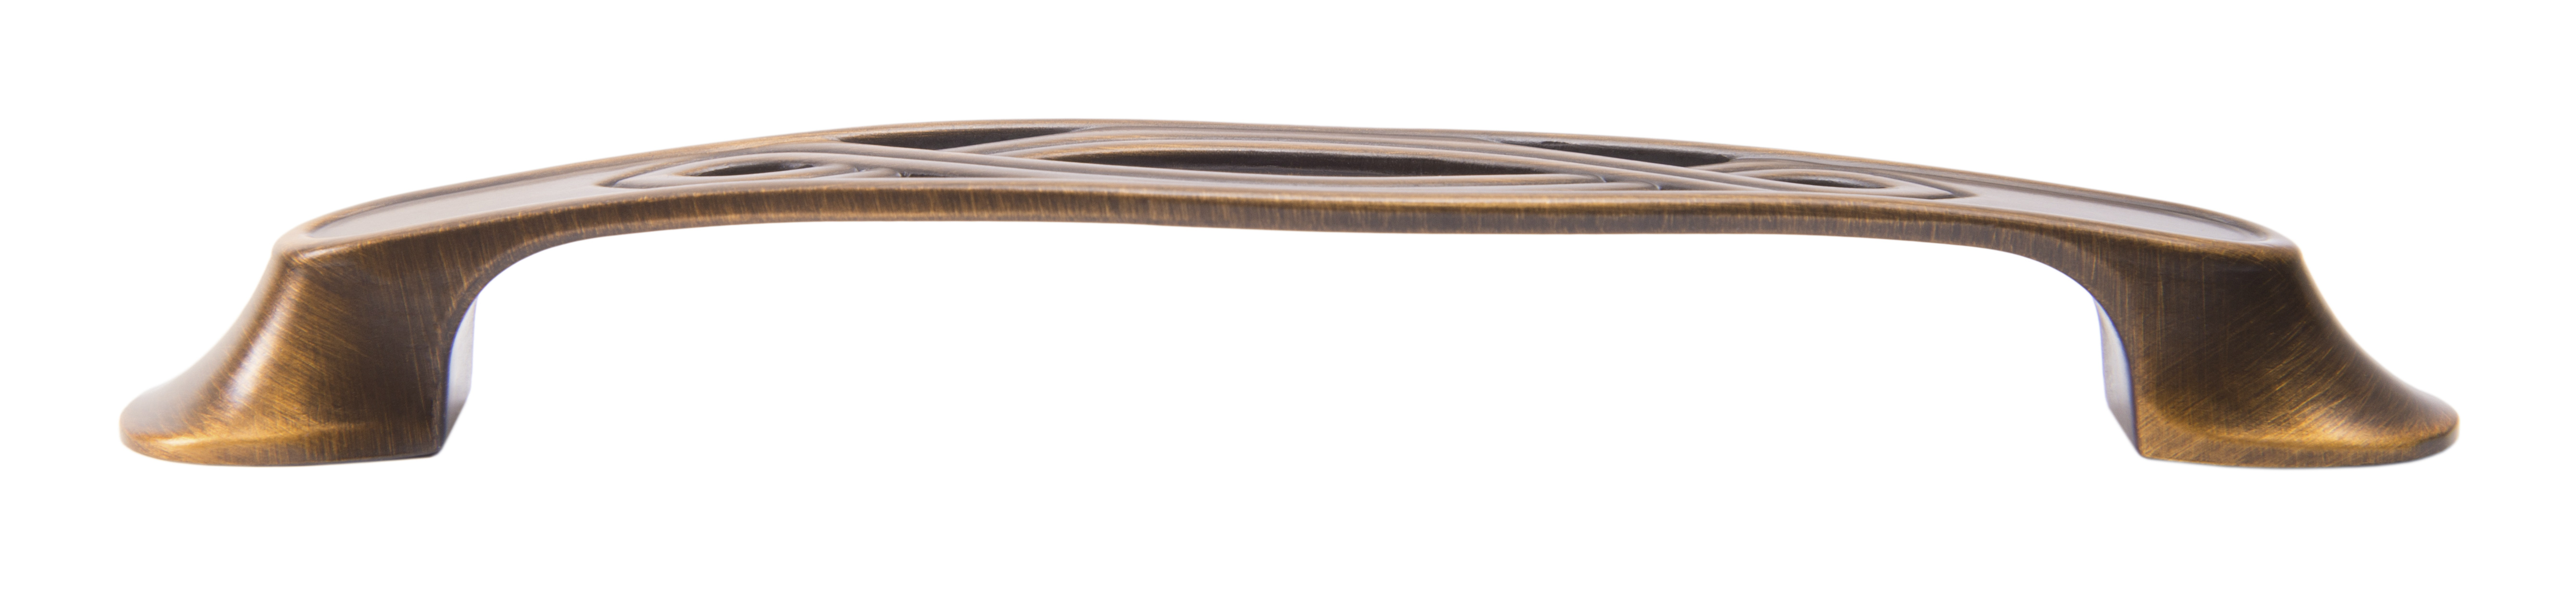 Ручка мебельная скоба 128мм старинная бронза RS407BAB.4/128 Boyard / 719742-1 / оптом и в розницу / мебельная фурнитура "ЛАВР"